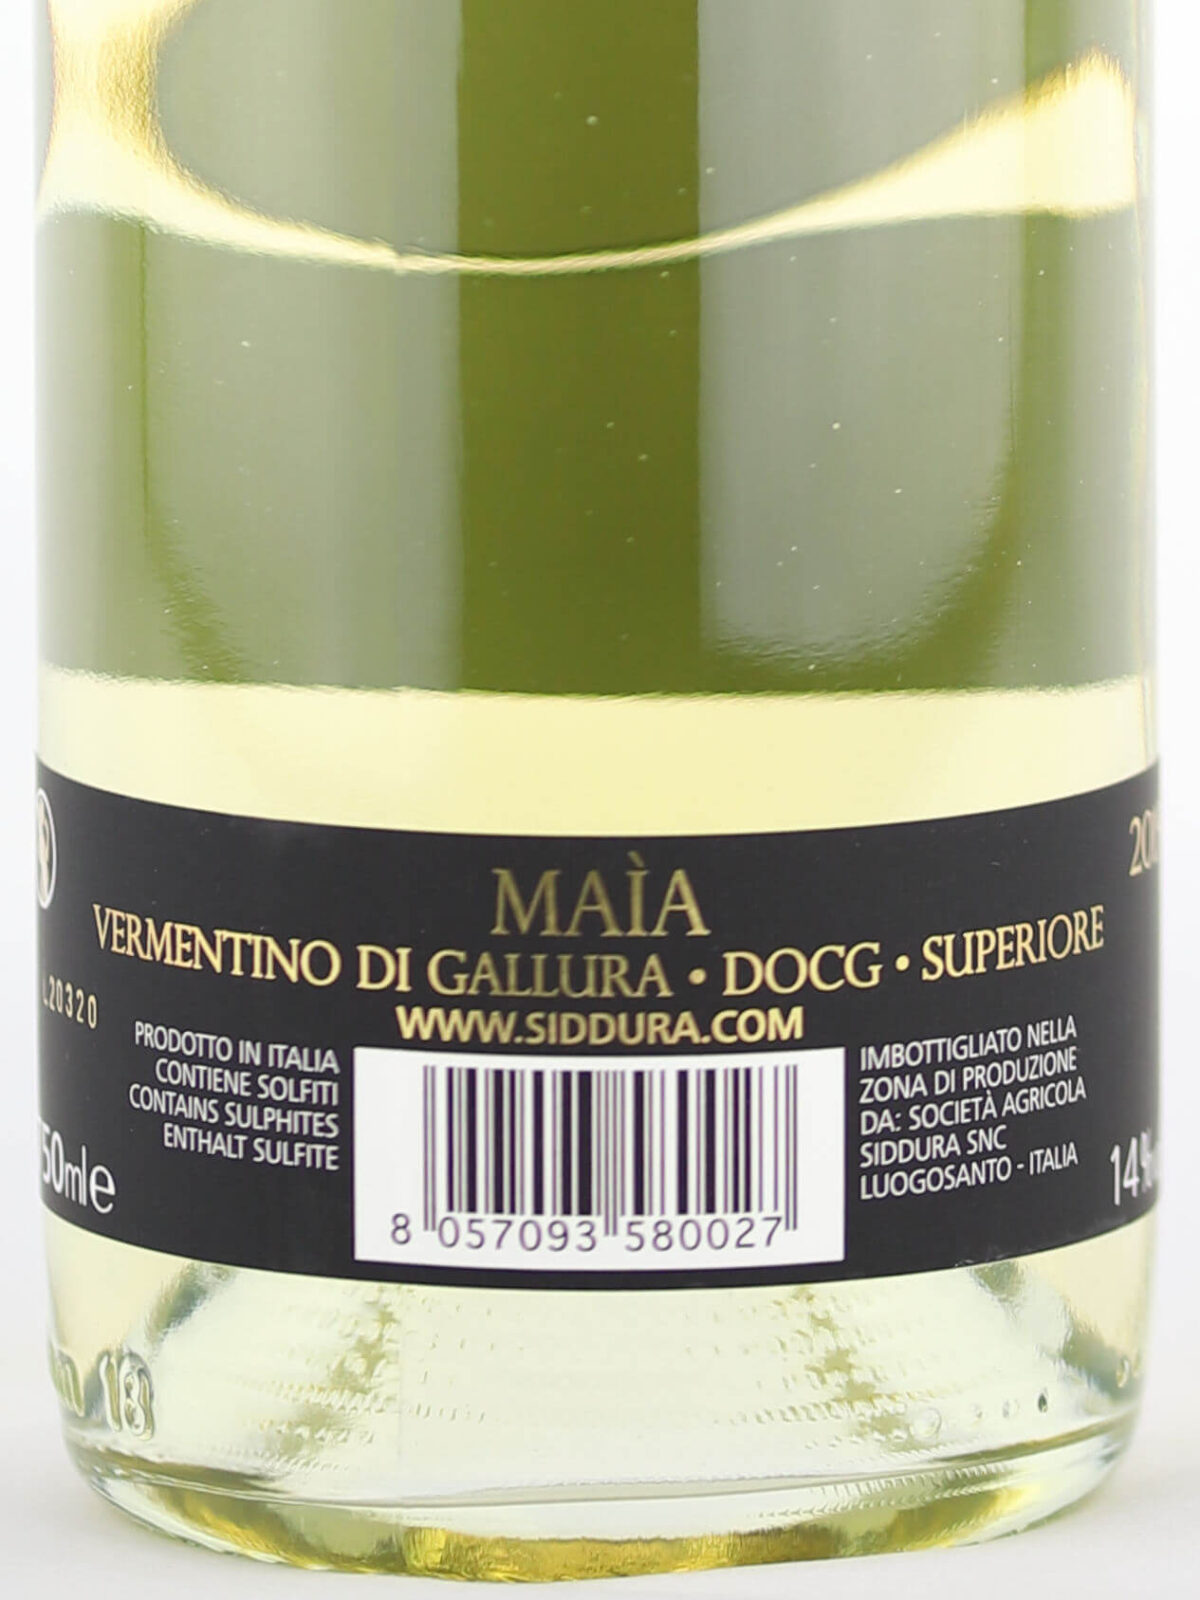 Back label of Siddura Maia 2019 Vermentino di Gallura DOCG Superiore